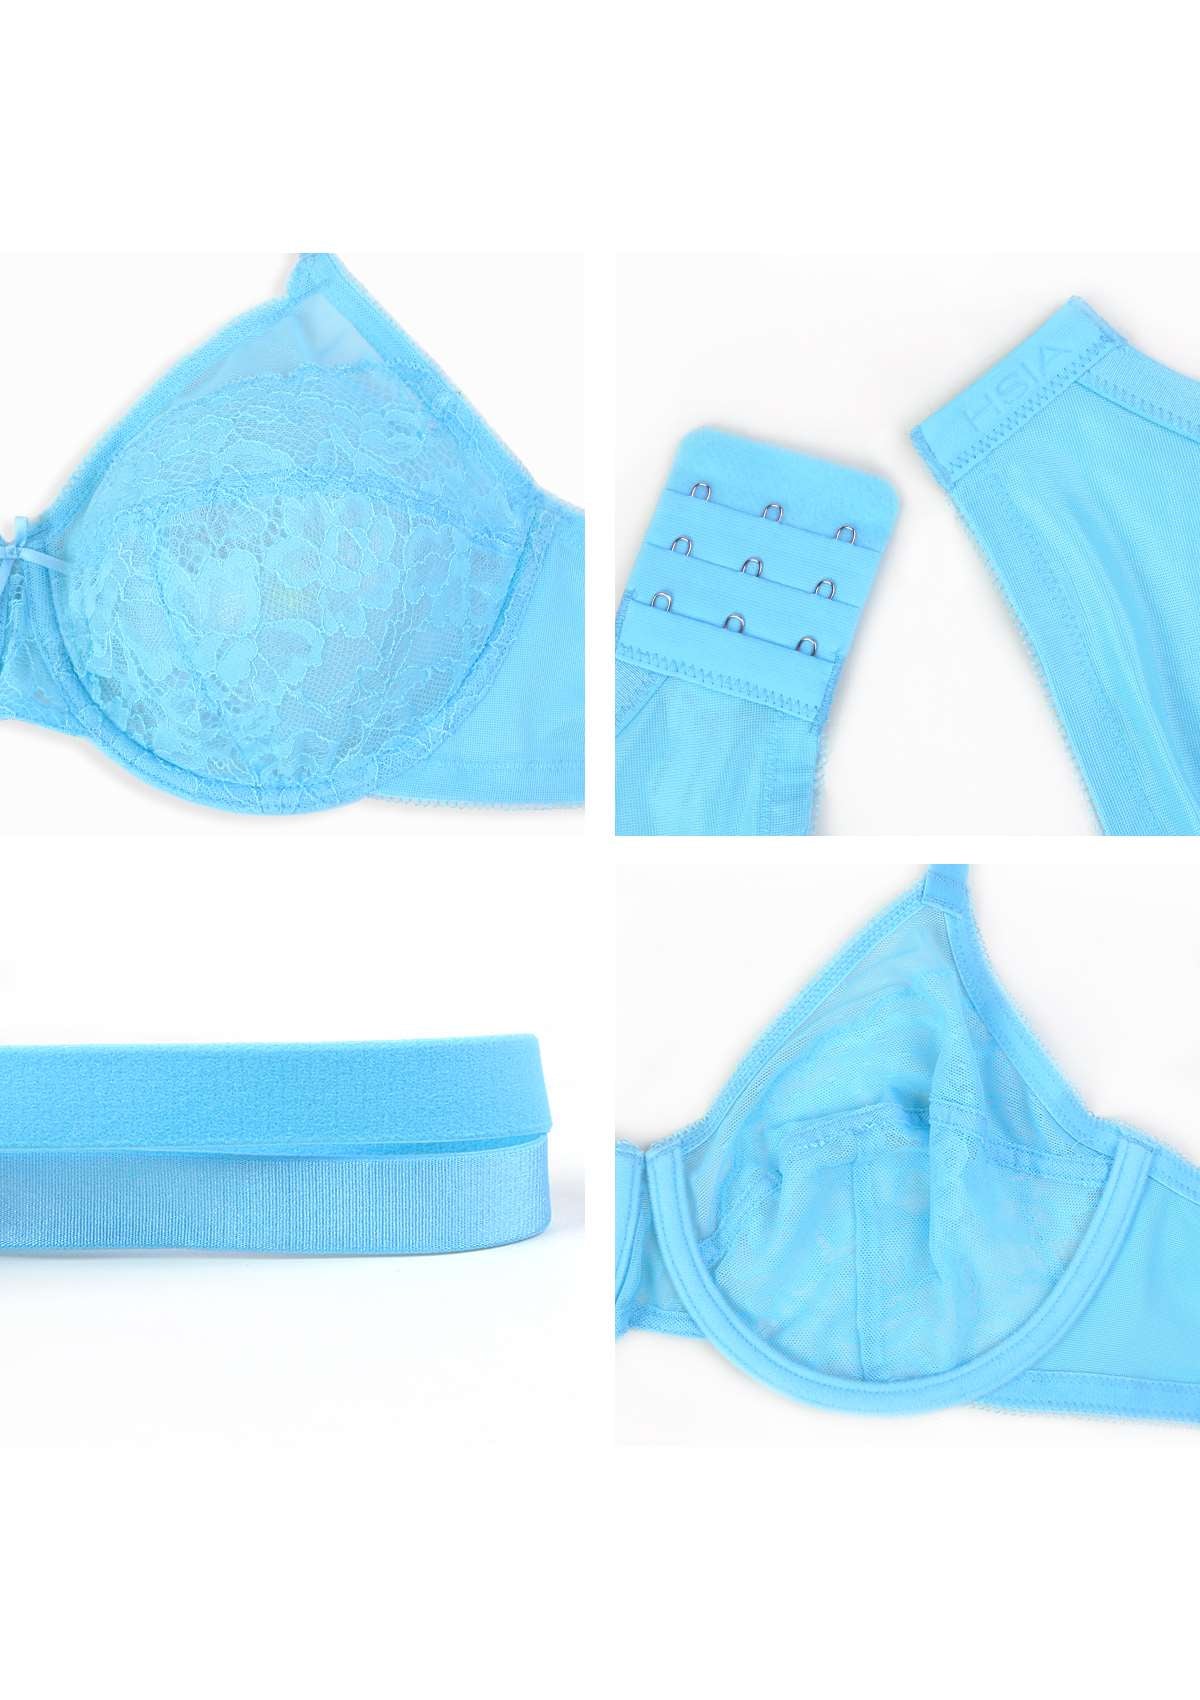 HSIA Enchante Minimizer Lace Bra: Full Support For Heavy Breasts - Capri Blue / 46 / DD/E